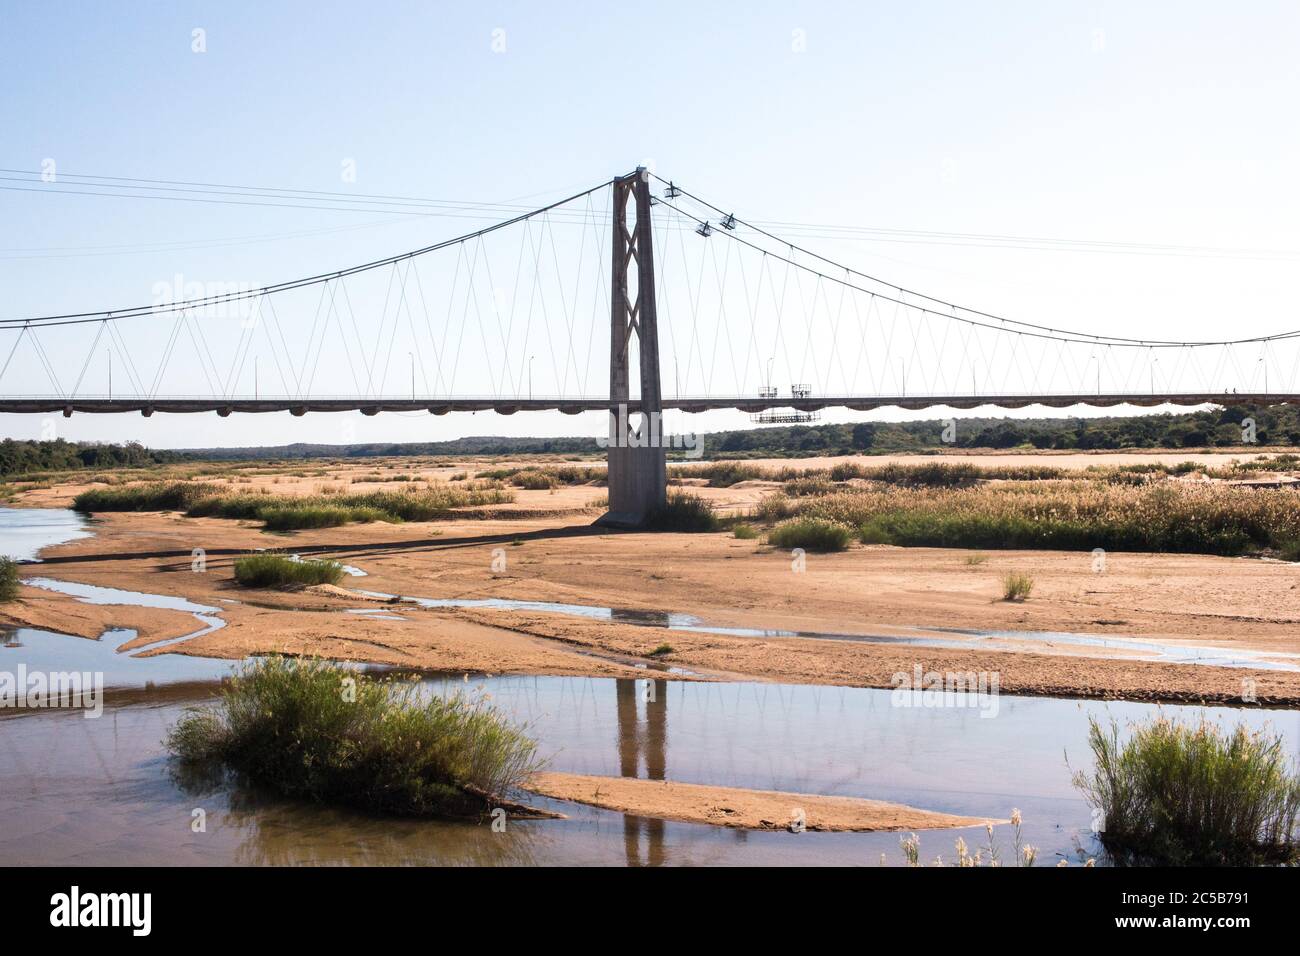 Pont de Save River qui relie les provinces de Gaza et d'Inhambane au sud, de Manica et Sofala au nord du Mozambique Banque D'Images